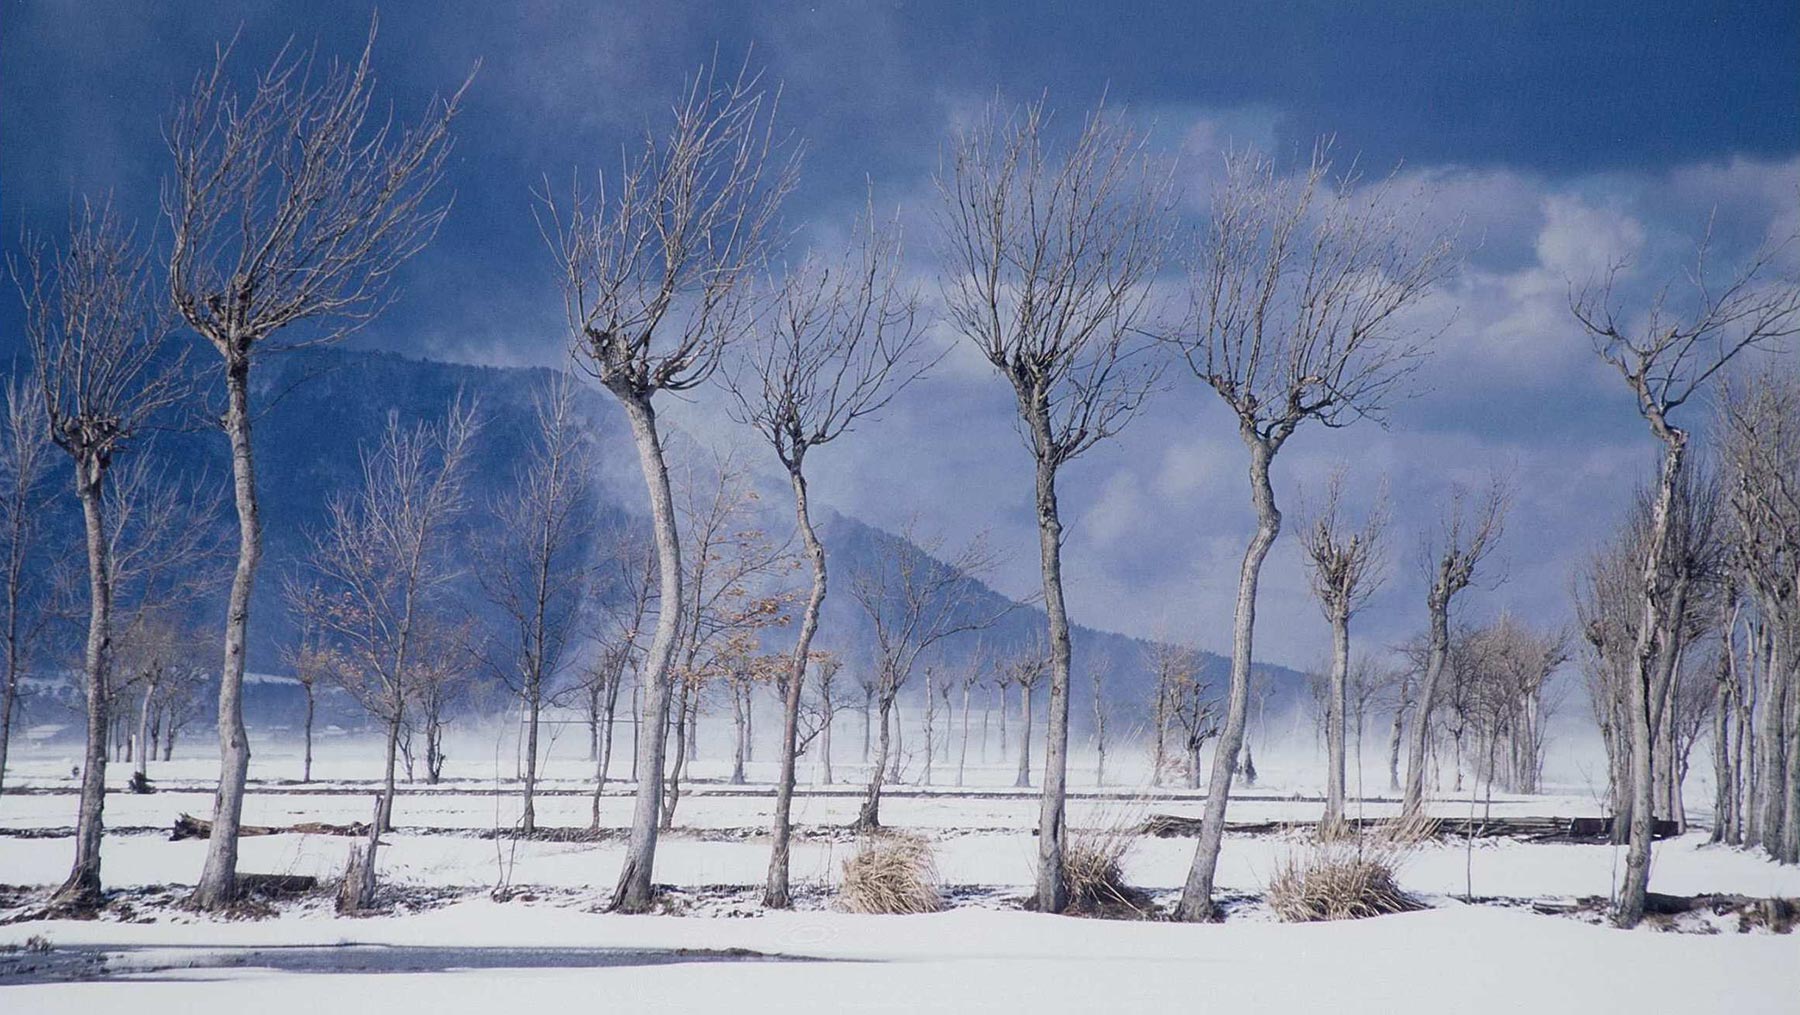 ―冬― 严冬，暴风雪后的成排稻架木